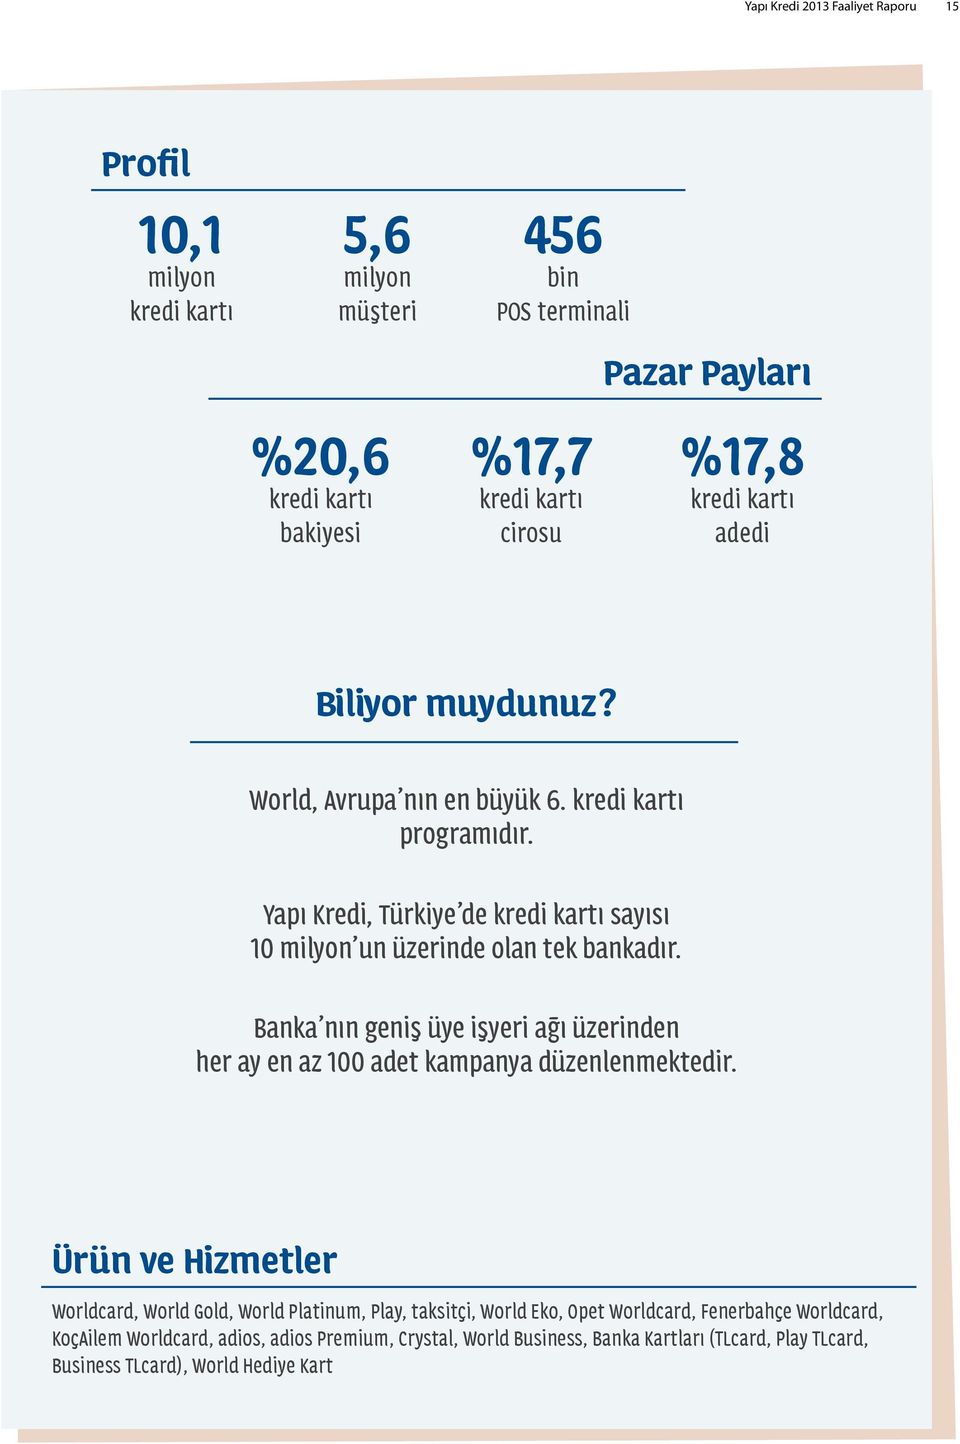 Yapı Kredi, Türkiye de kredi kartı sayısı 10 milyon un üzerinde olan tek bankadır. Banka nın geniş üye işyeri ağı üzerinden her ay en az 100 adet kampanya düzenlenmektedir.